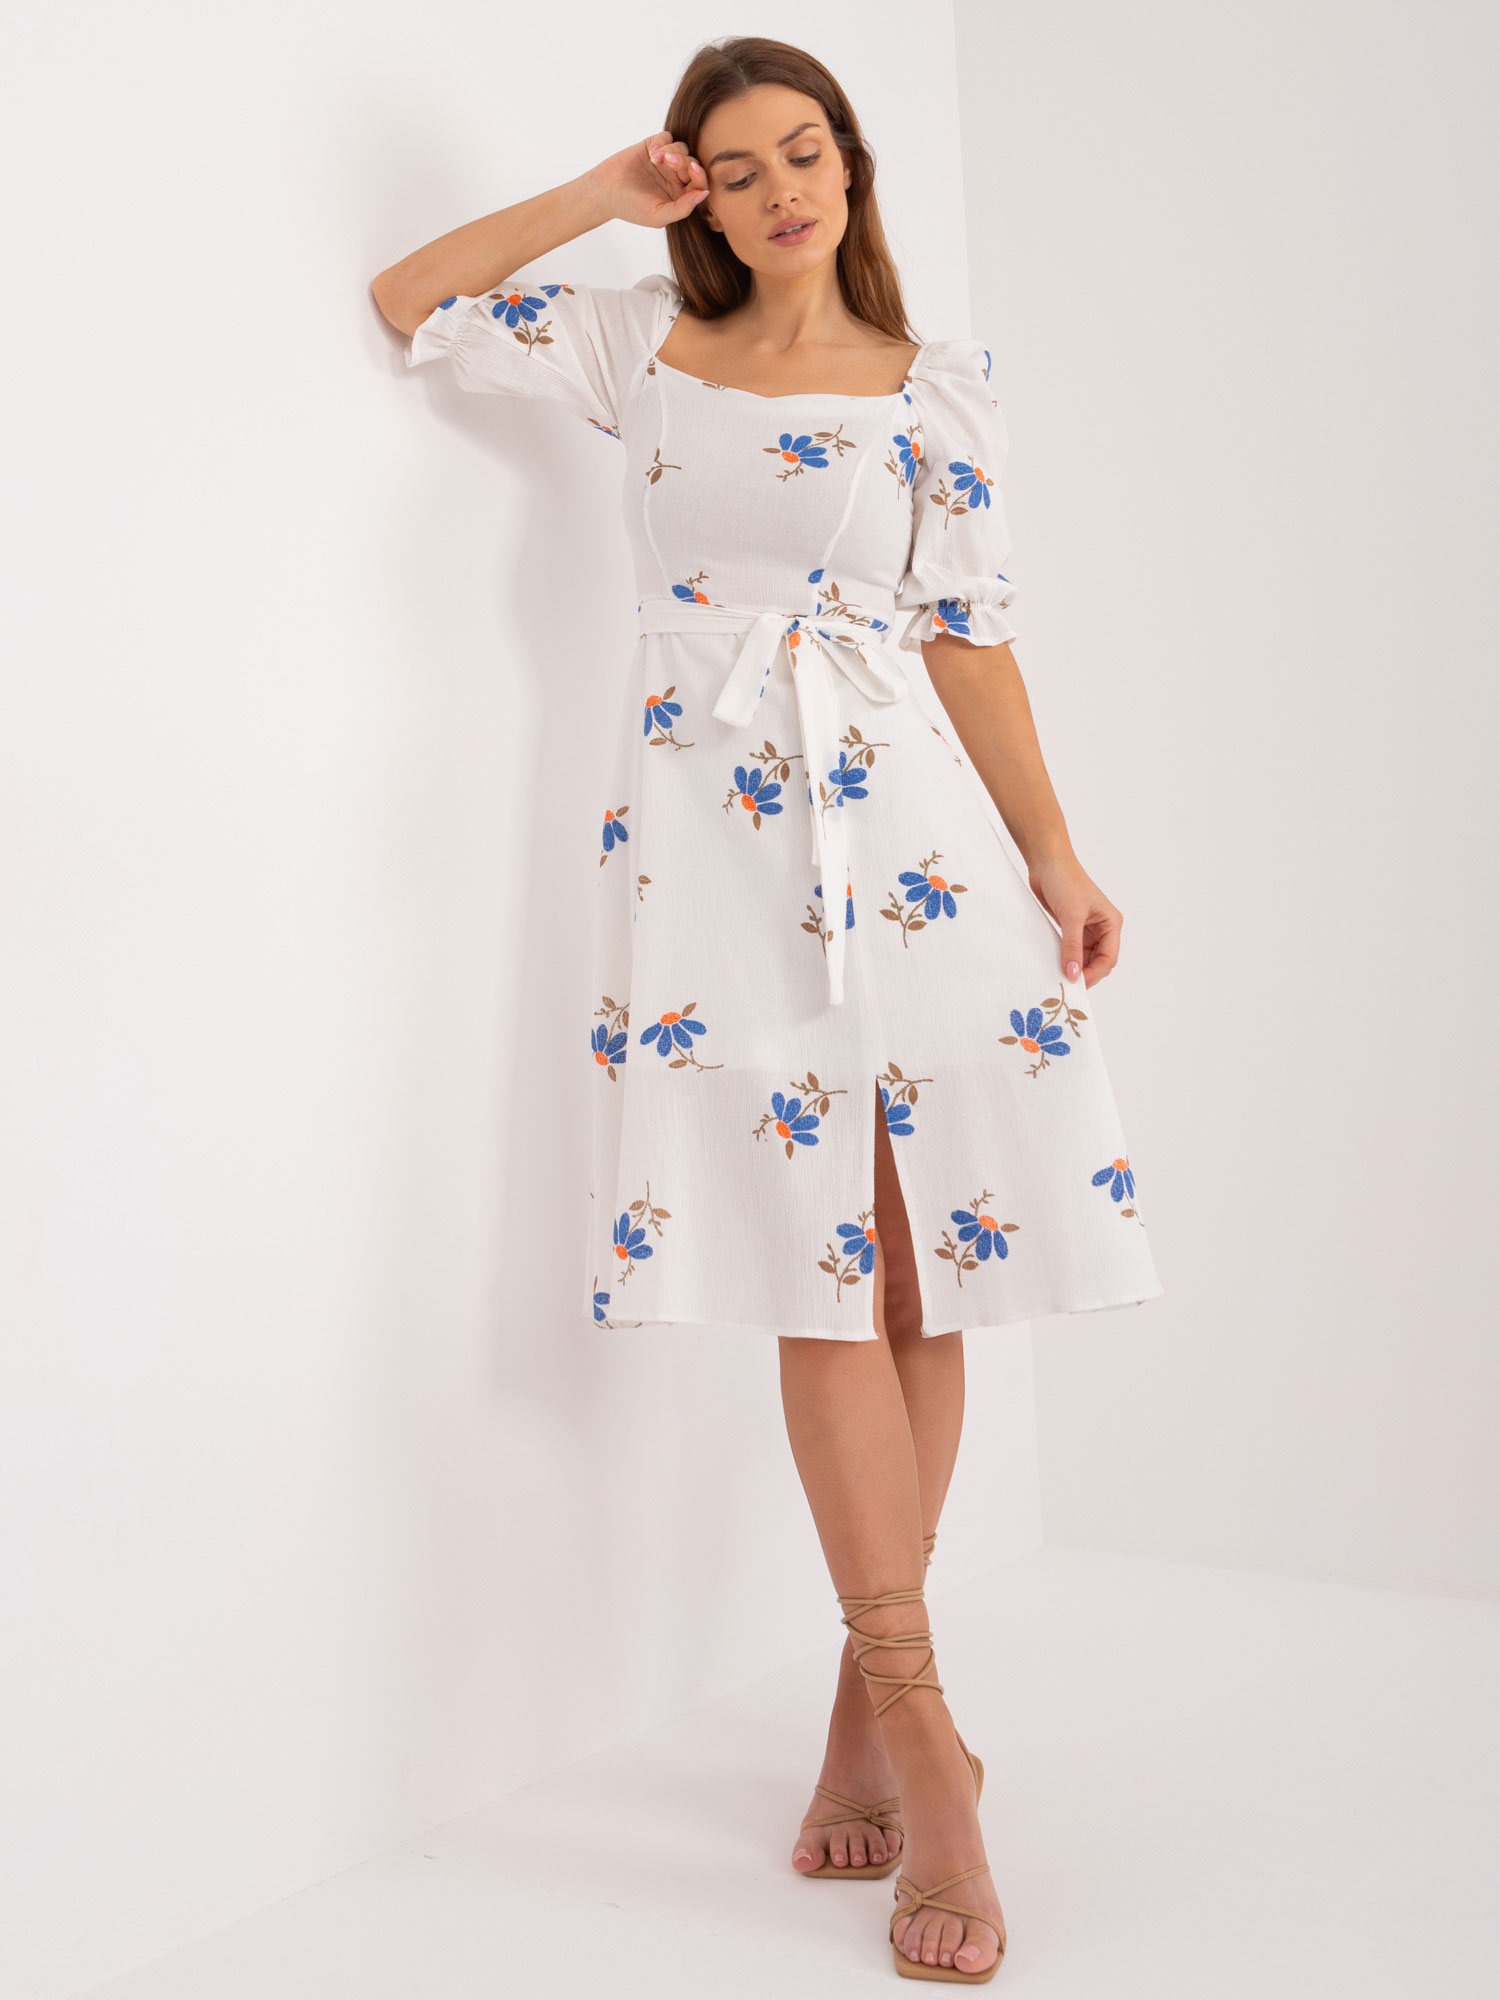 Bílé šaty s modrými květinami -LK-SK-508964-3.95-white-blue Velikost: 36